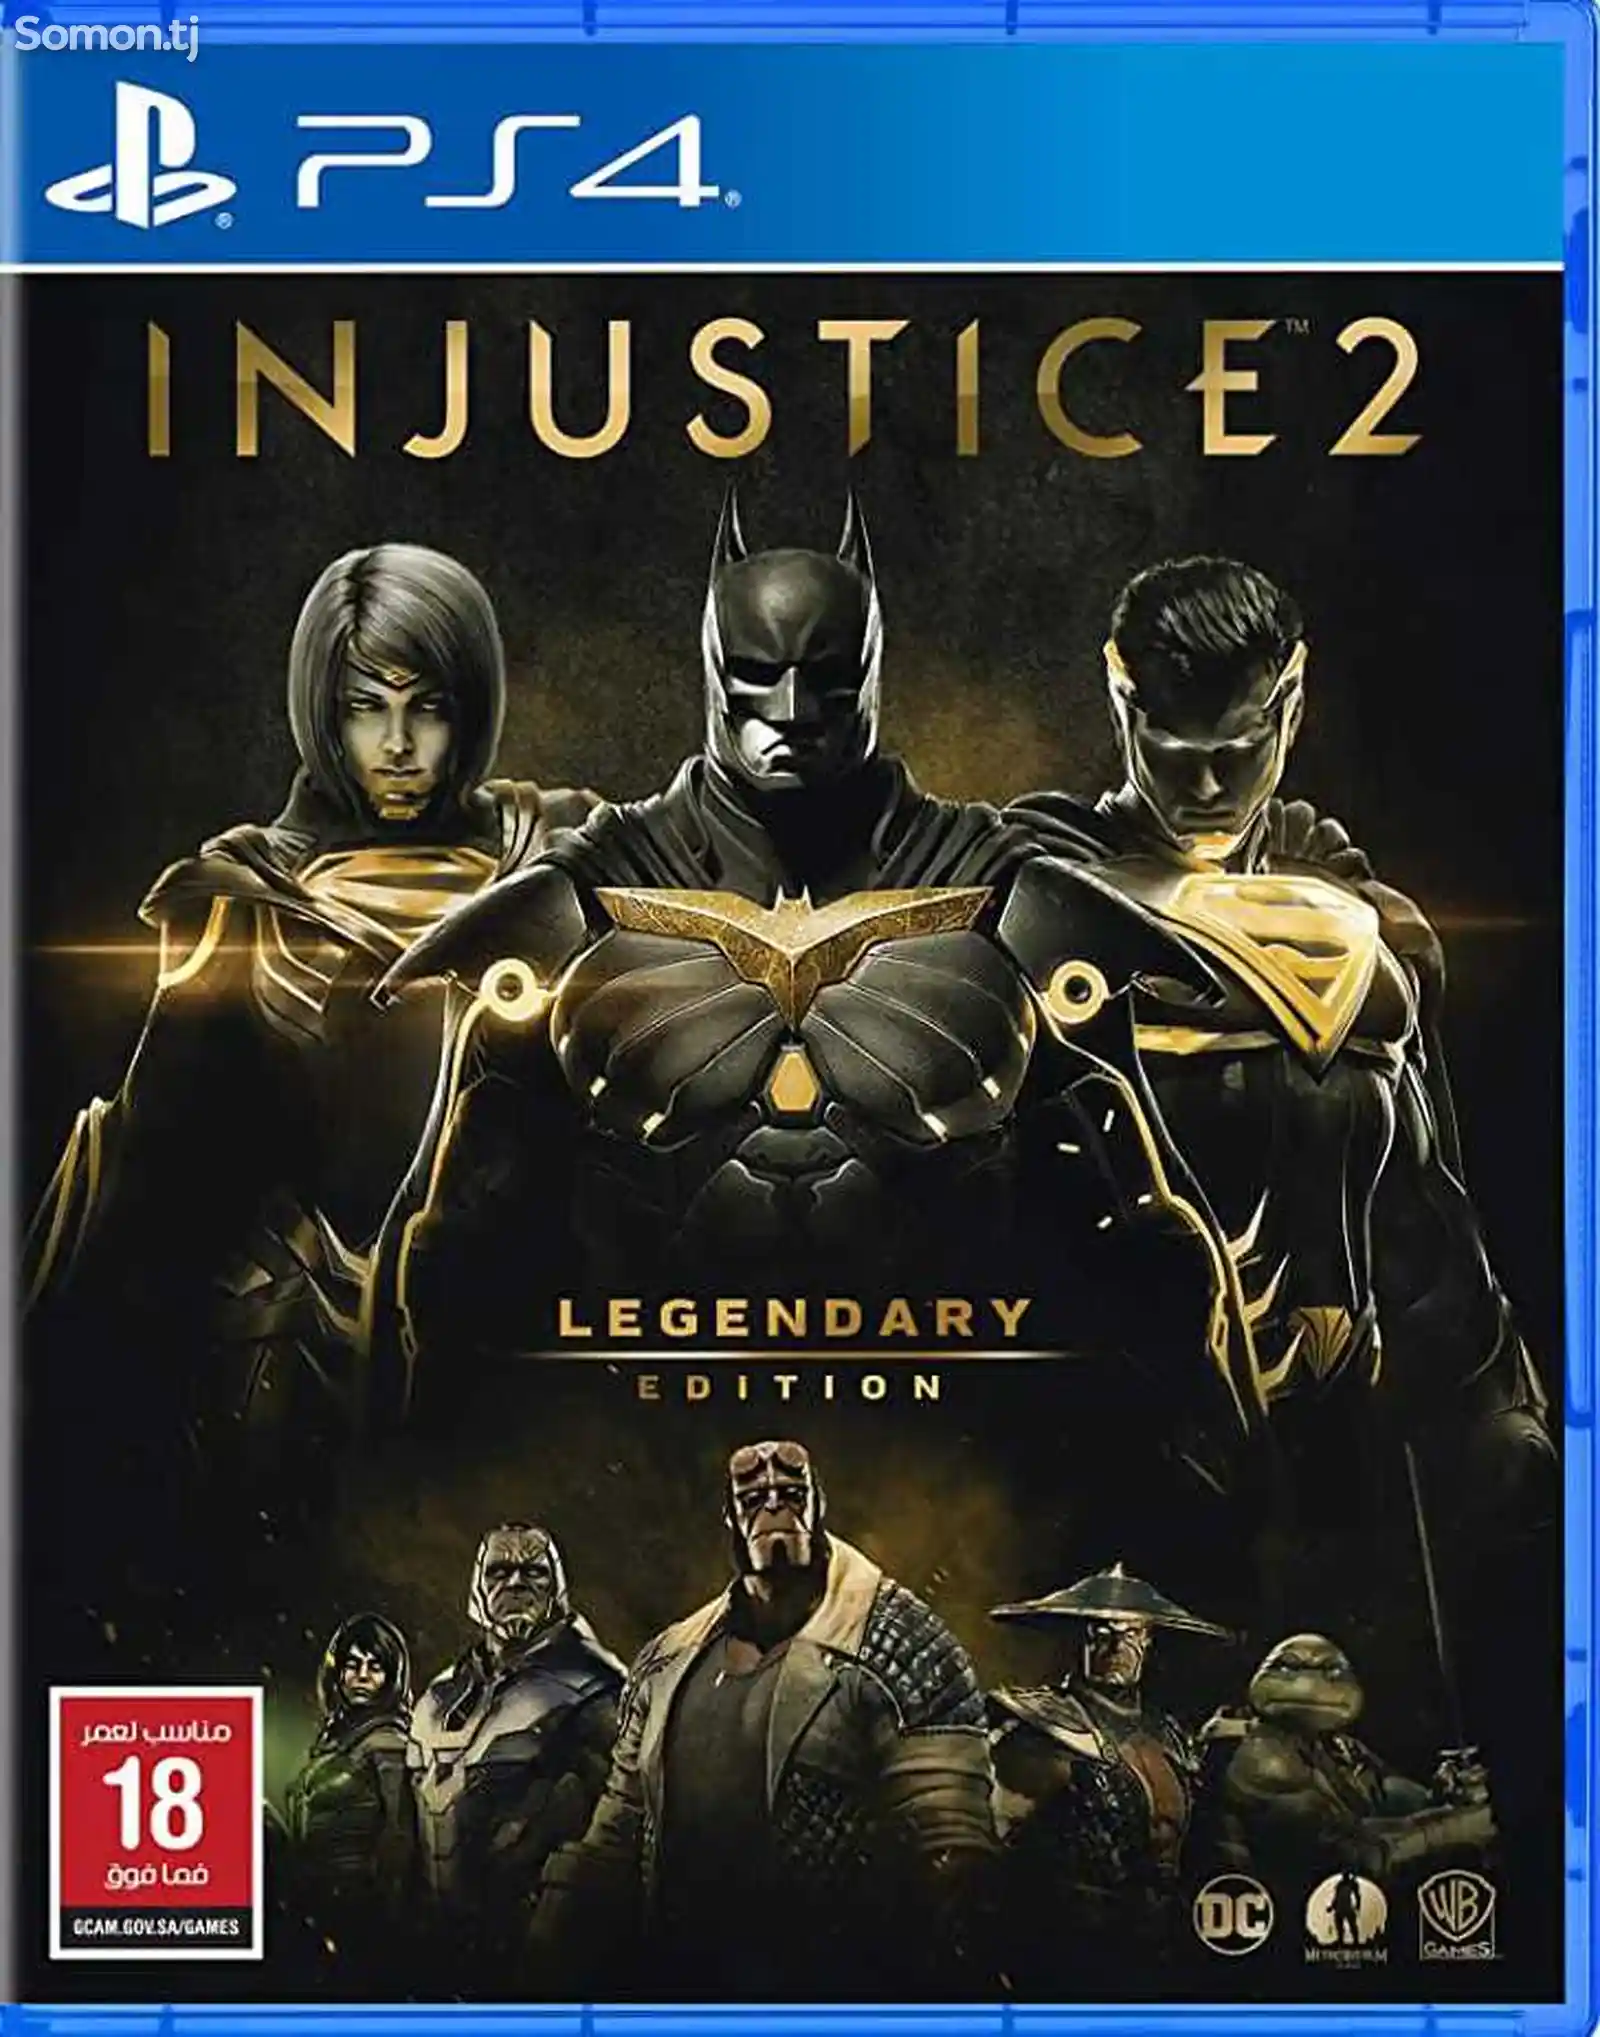 Игра Injustice 2 Legendary edition для PS-4 /5.05 / 6.72 / 7.02 / 7.55 / 9.00 /-1